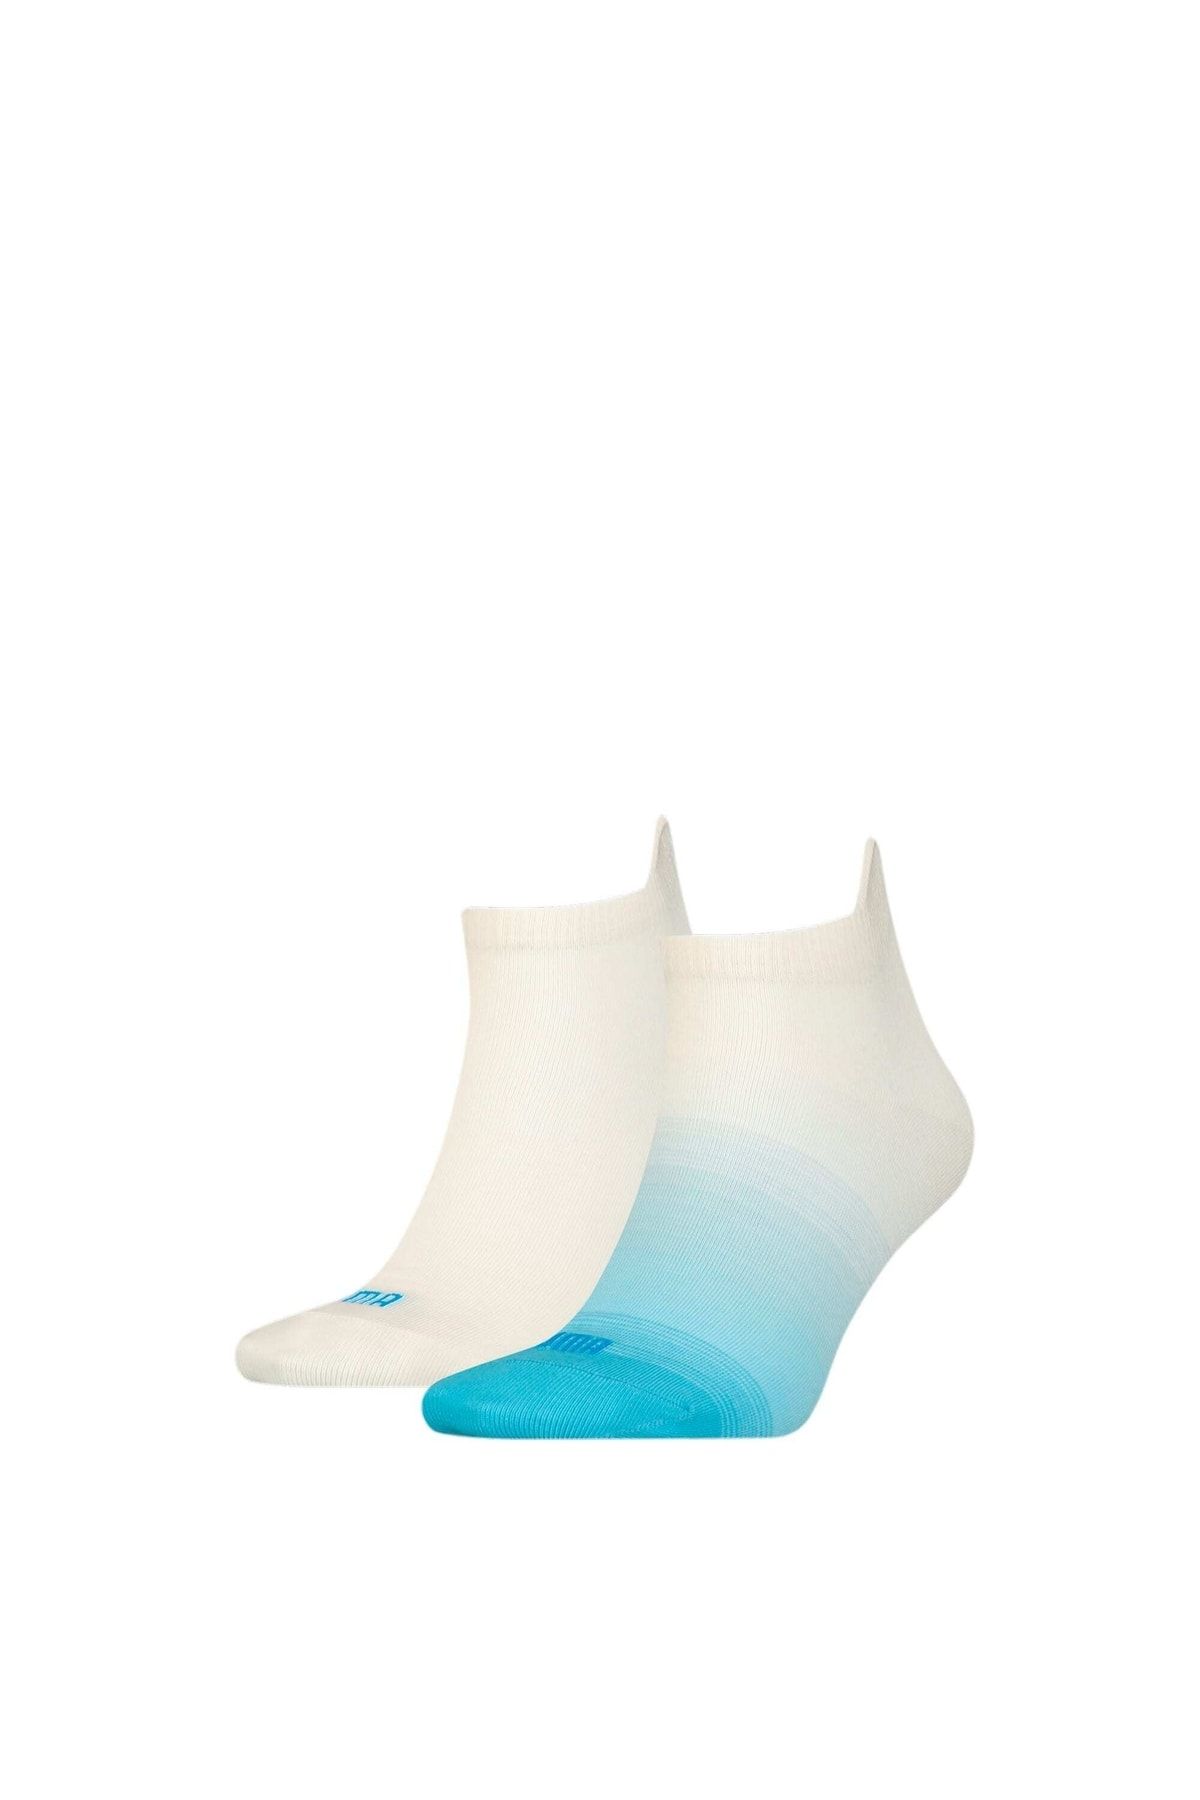 Puma Kadın Renk Geçişli Çorap (2'li Paket)